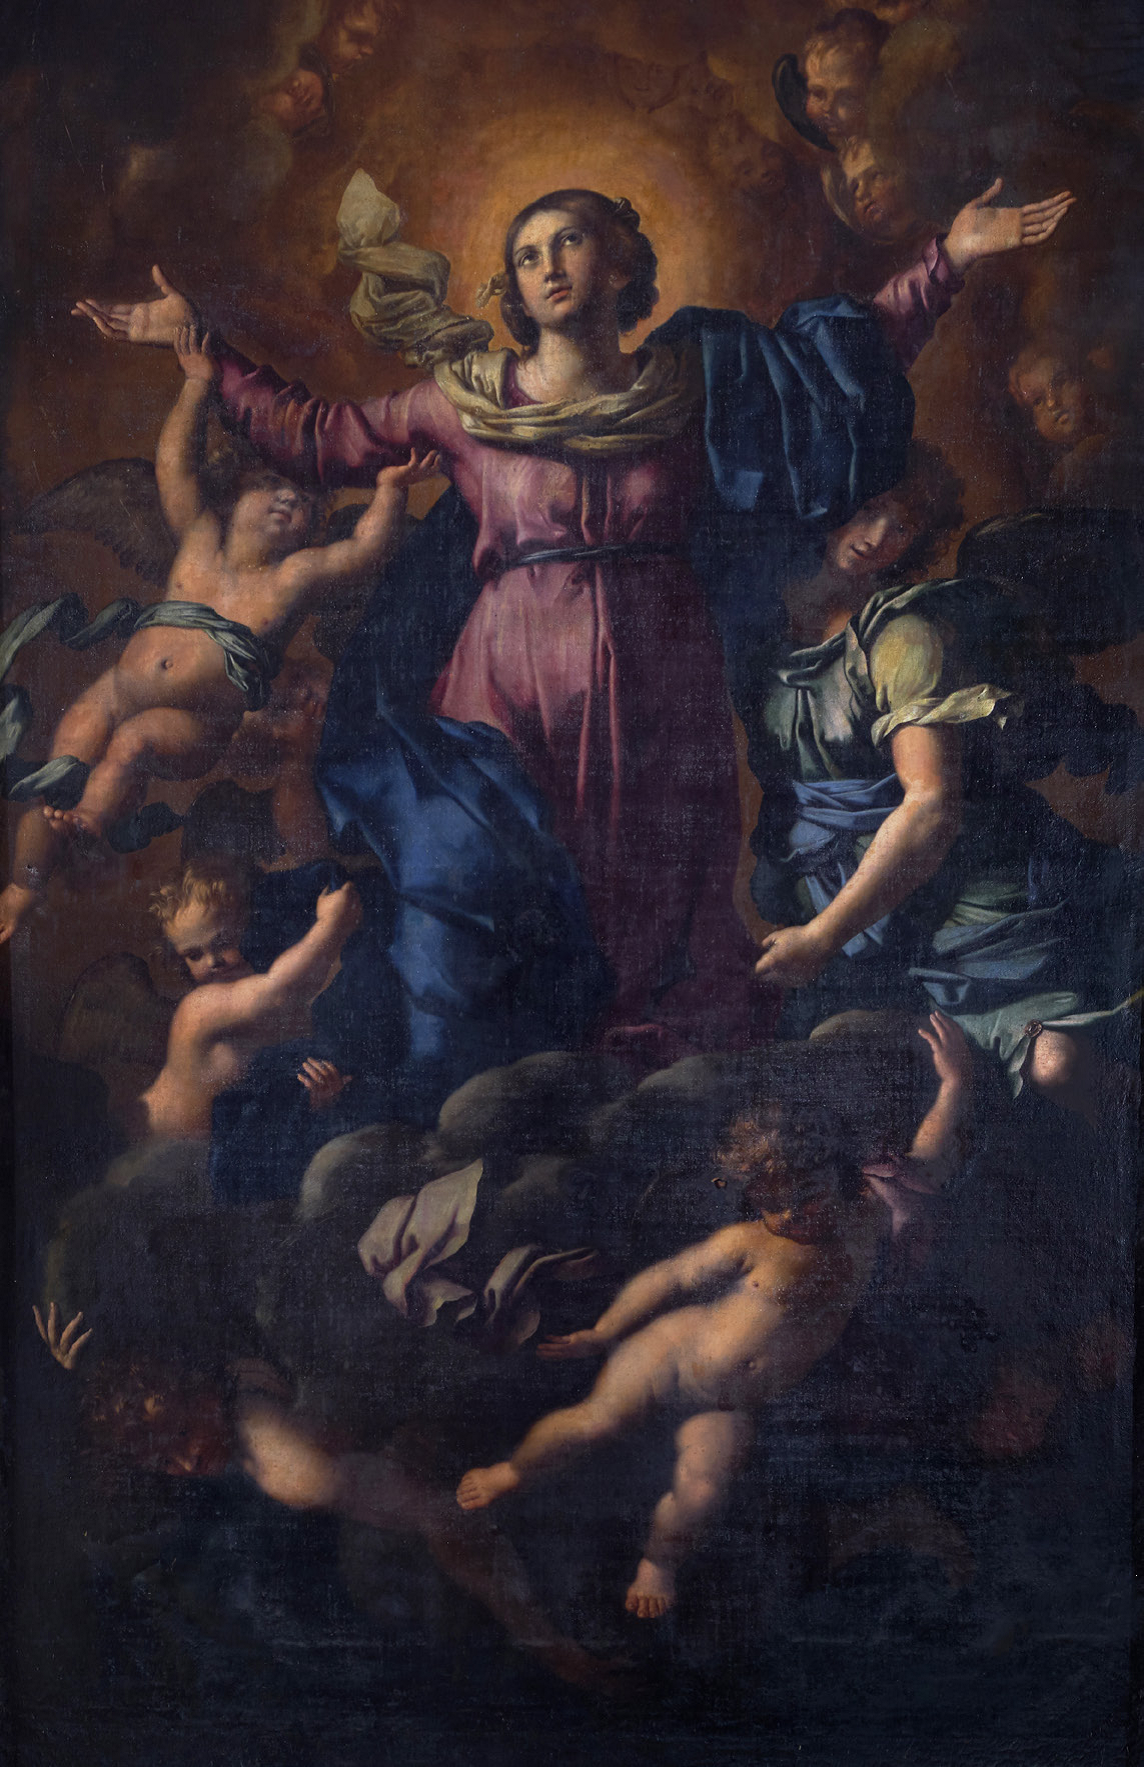 Il Cavalier Perugino e l’Assunzione della Vergine